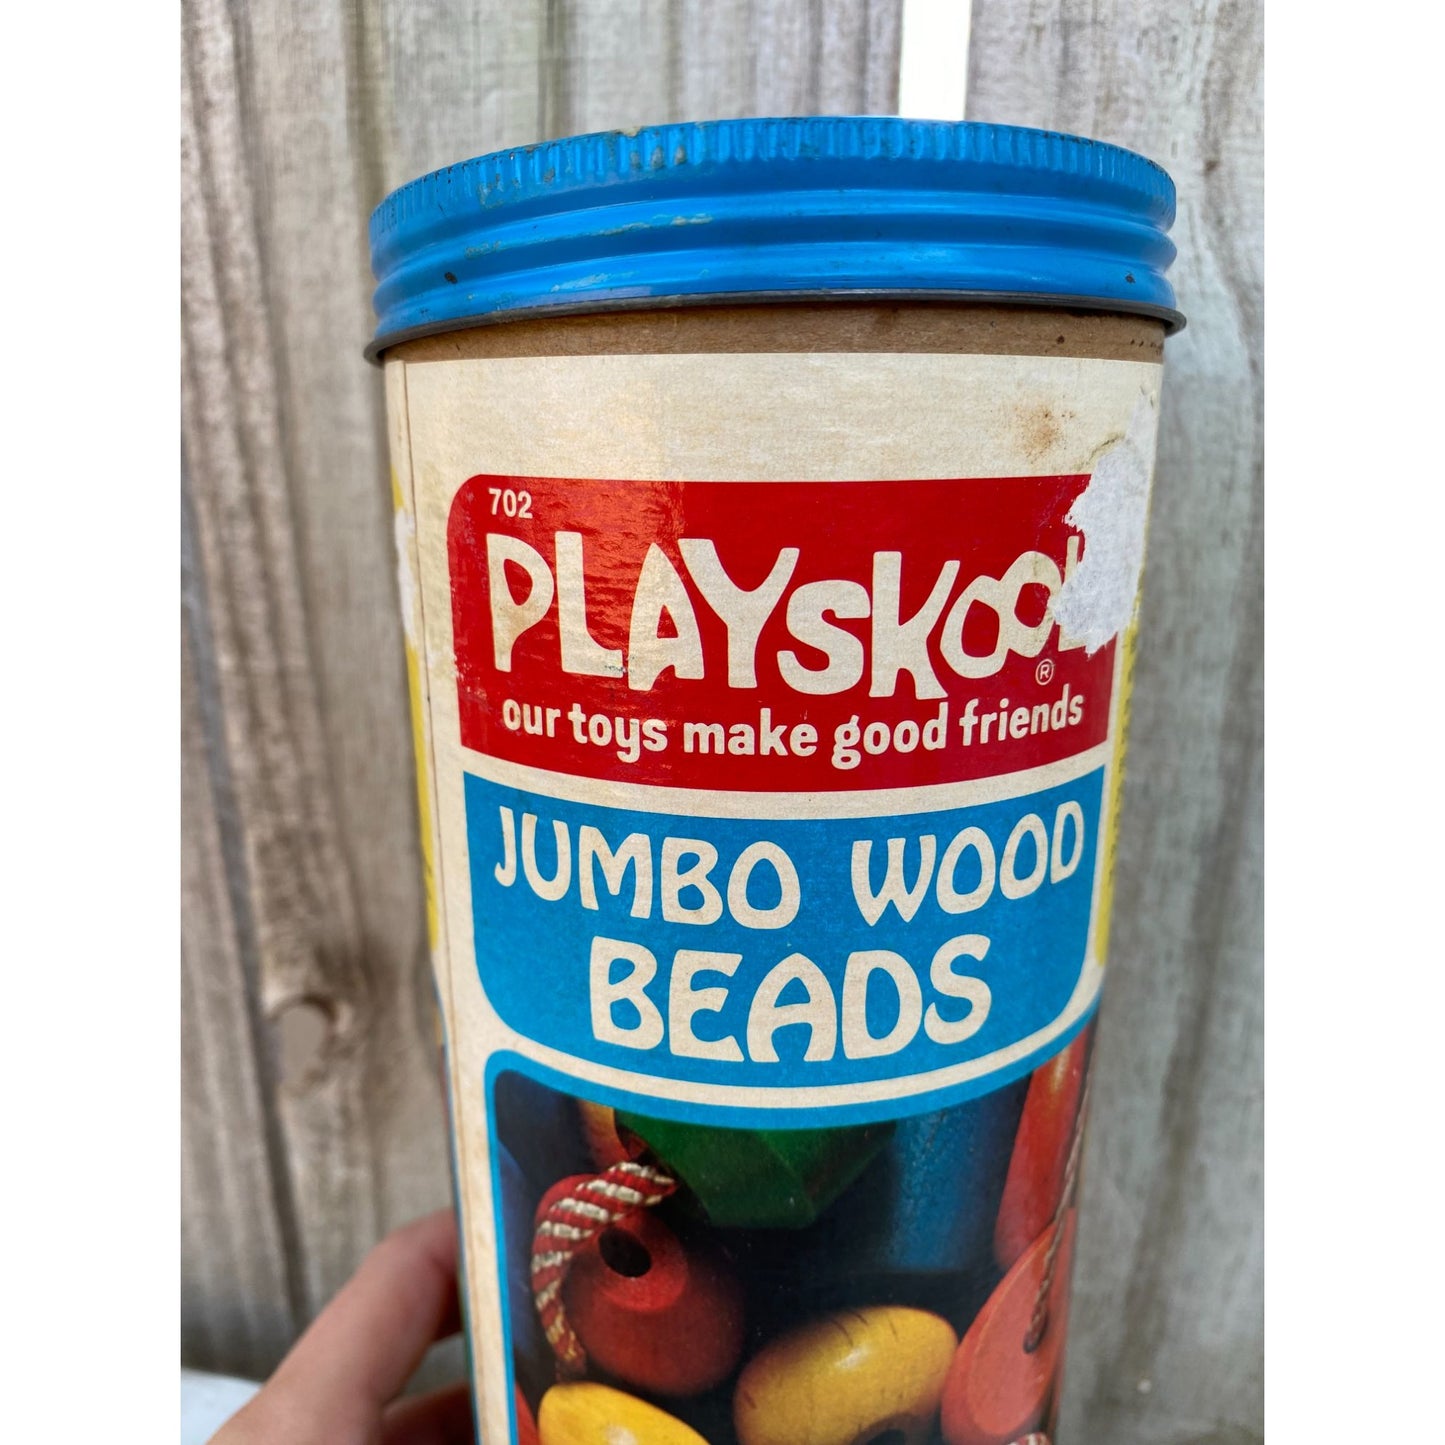 74" Playskool 702 Jumbo Wood Beads 30 Beads Complete Set